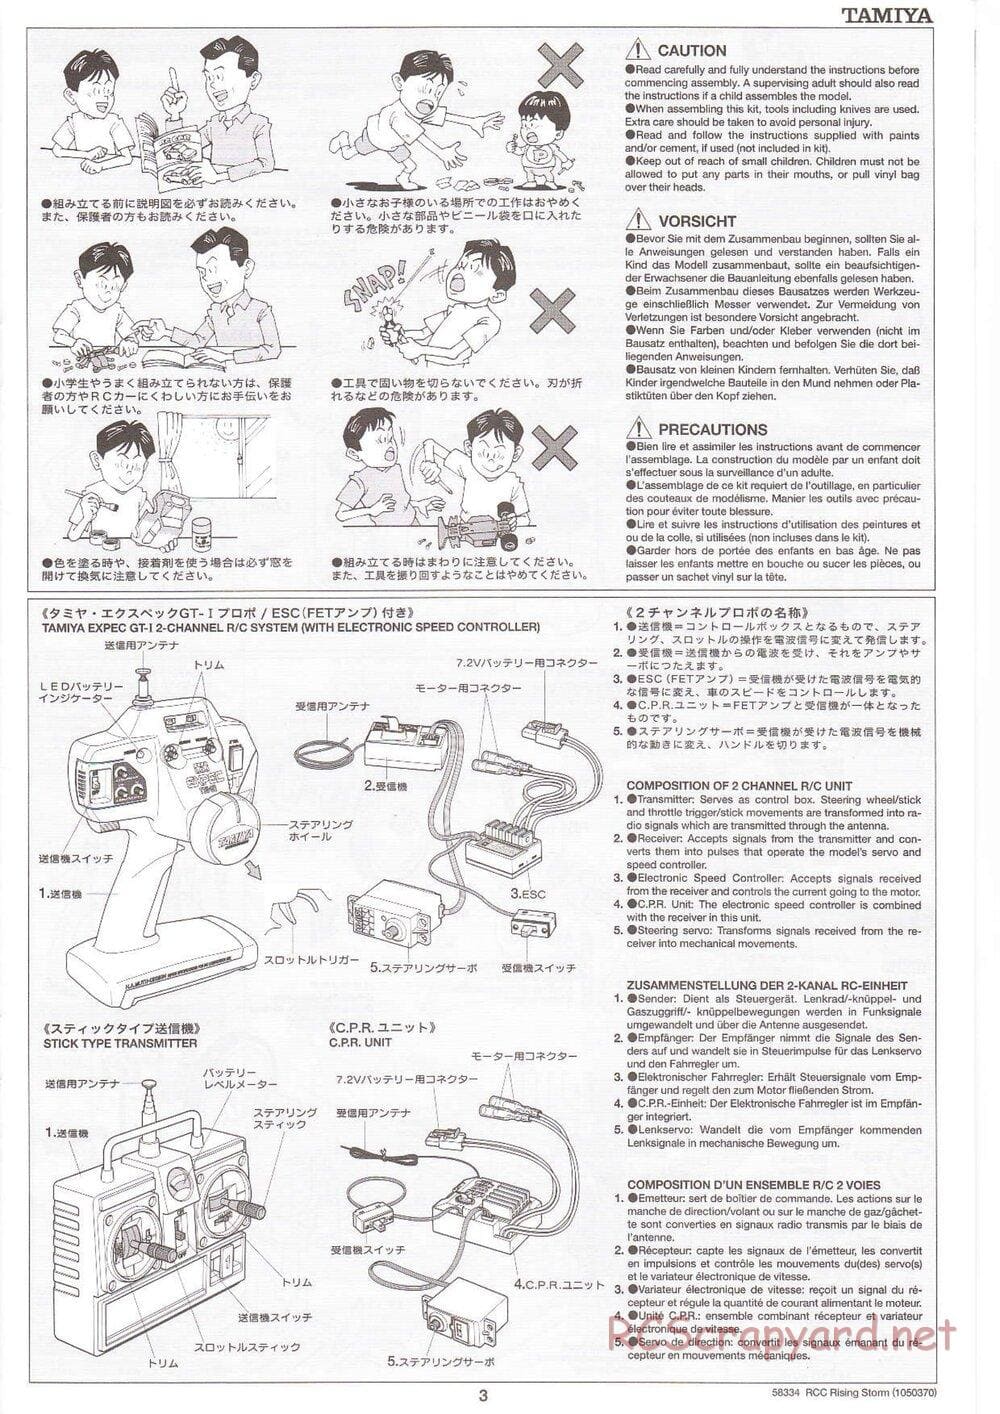 Tamiya - Rising Storm Chassis - Manual - Page 3